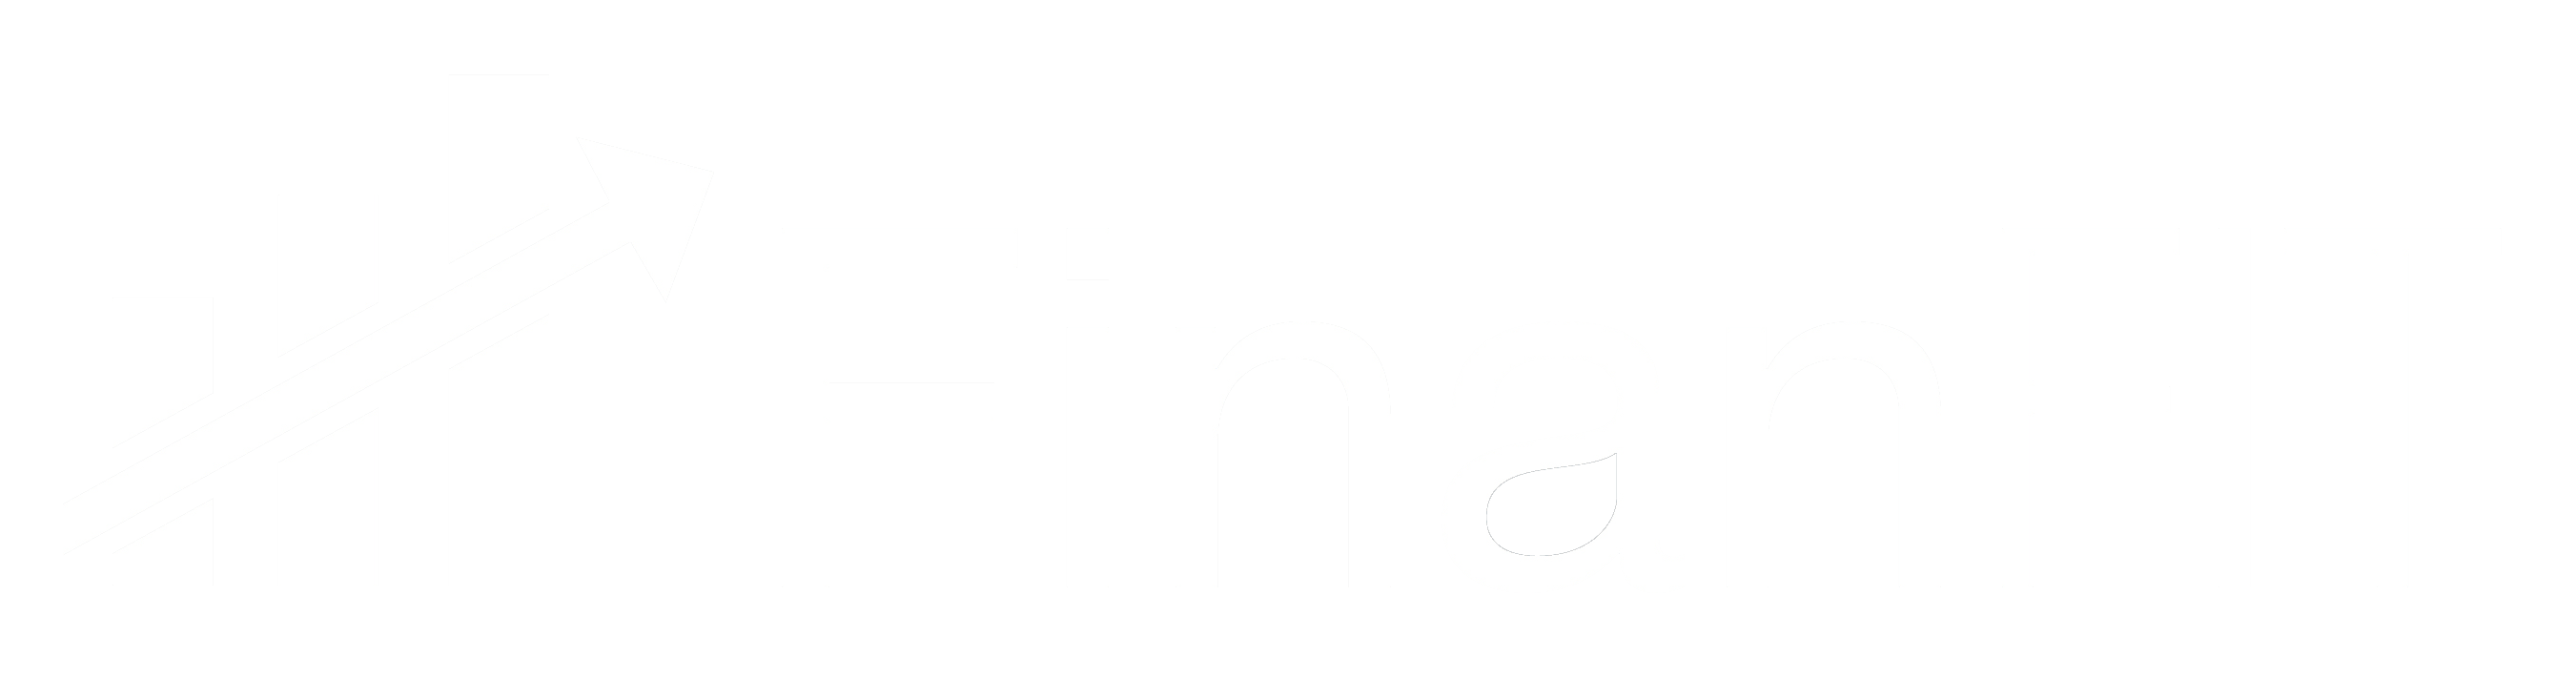 Logotipo Finanfit